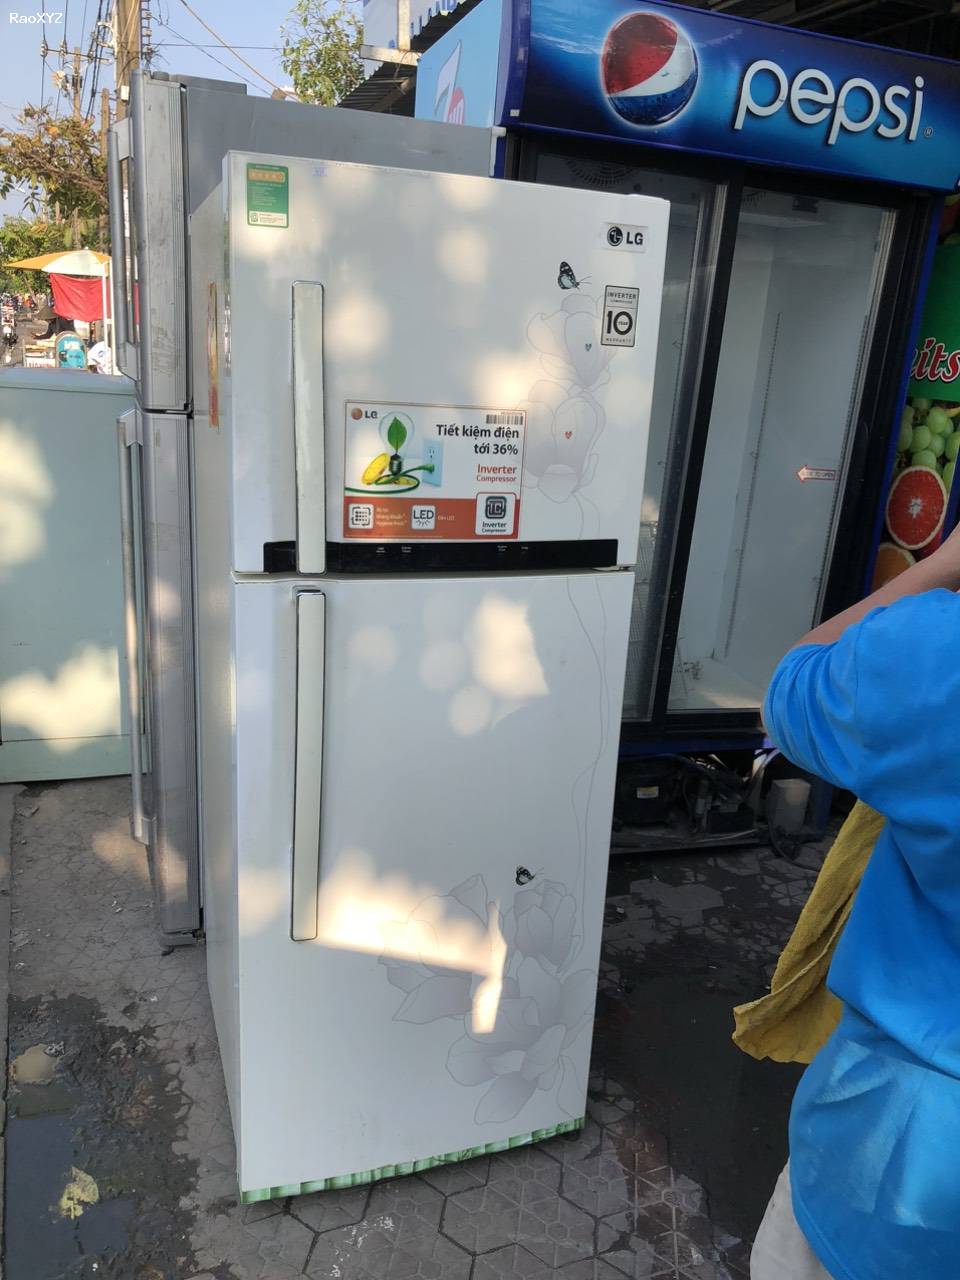 Tủ lạnh Lg 288lit tiết kiệm điện đã qua sử dụng